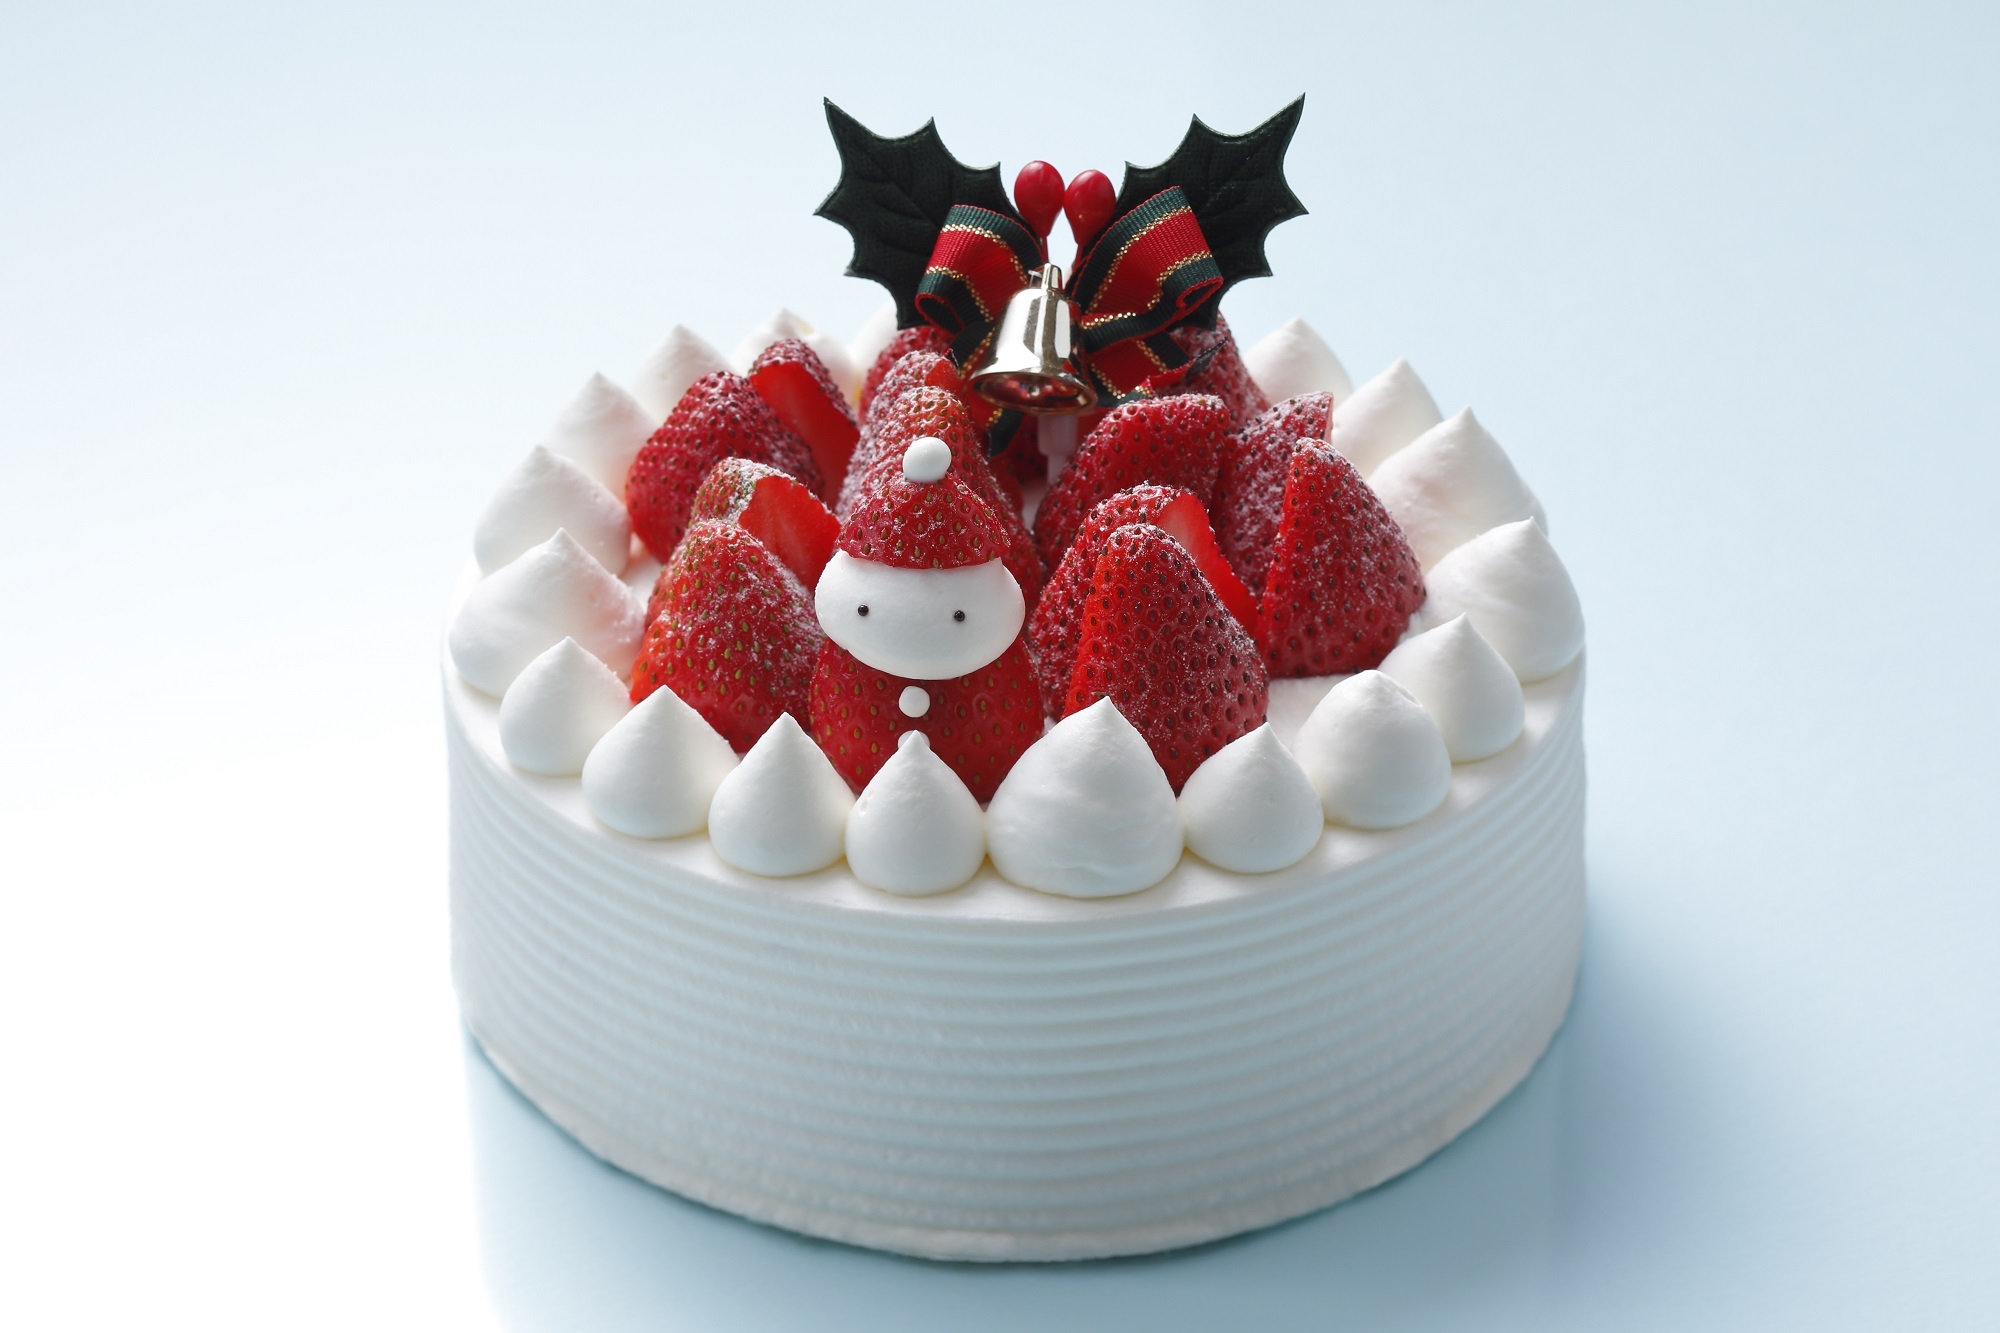 クリスマスケーキ2種が明治の迎賓館から登場 10月10日 日 より予約開始 株式会社長楽館のプレスリリース